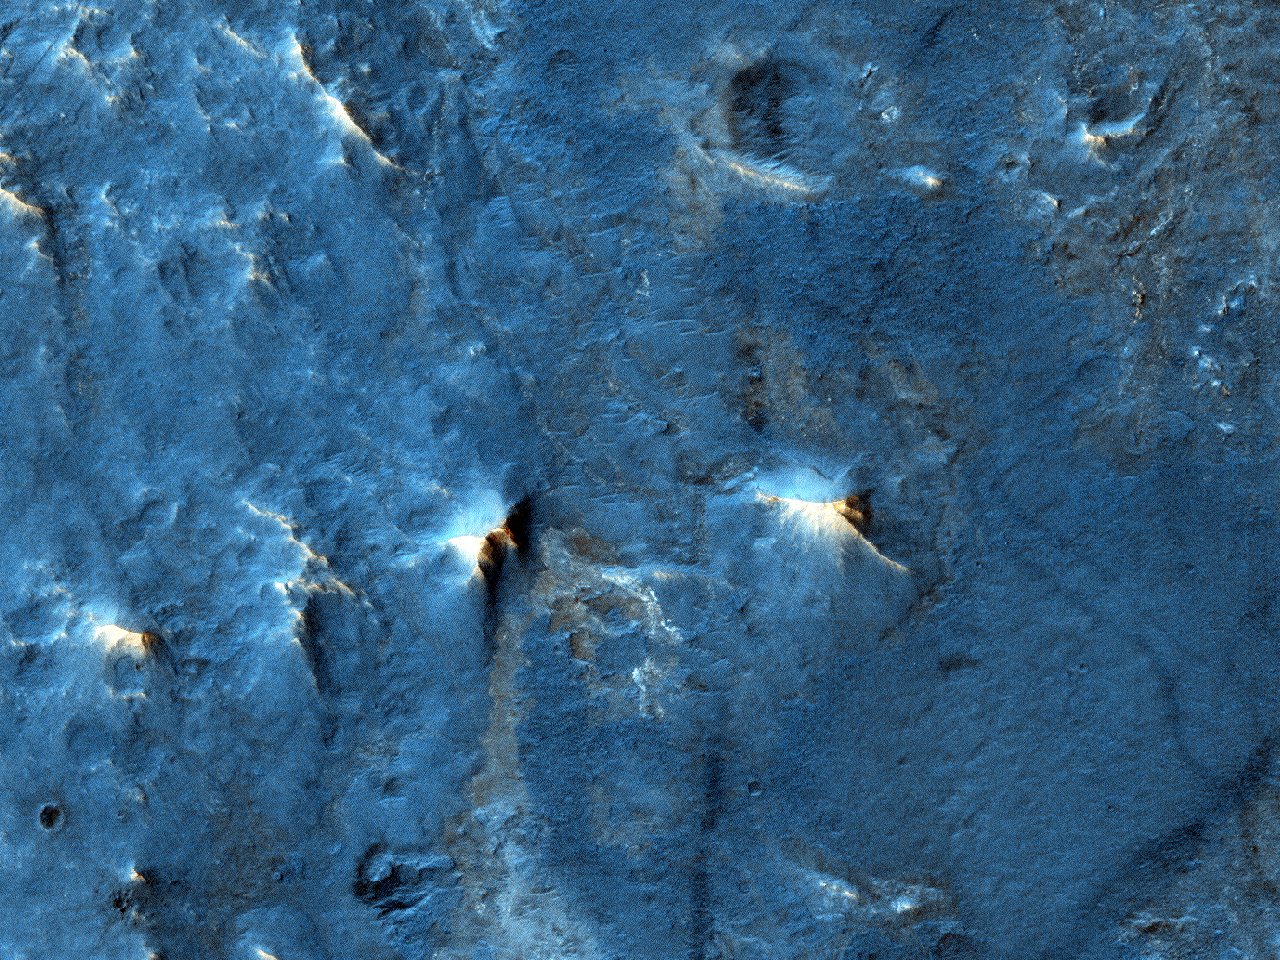 麦克劳克林撞击坑上的地形 (Mclaughlin Crater)